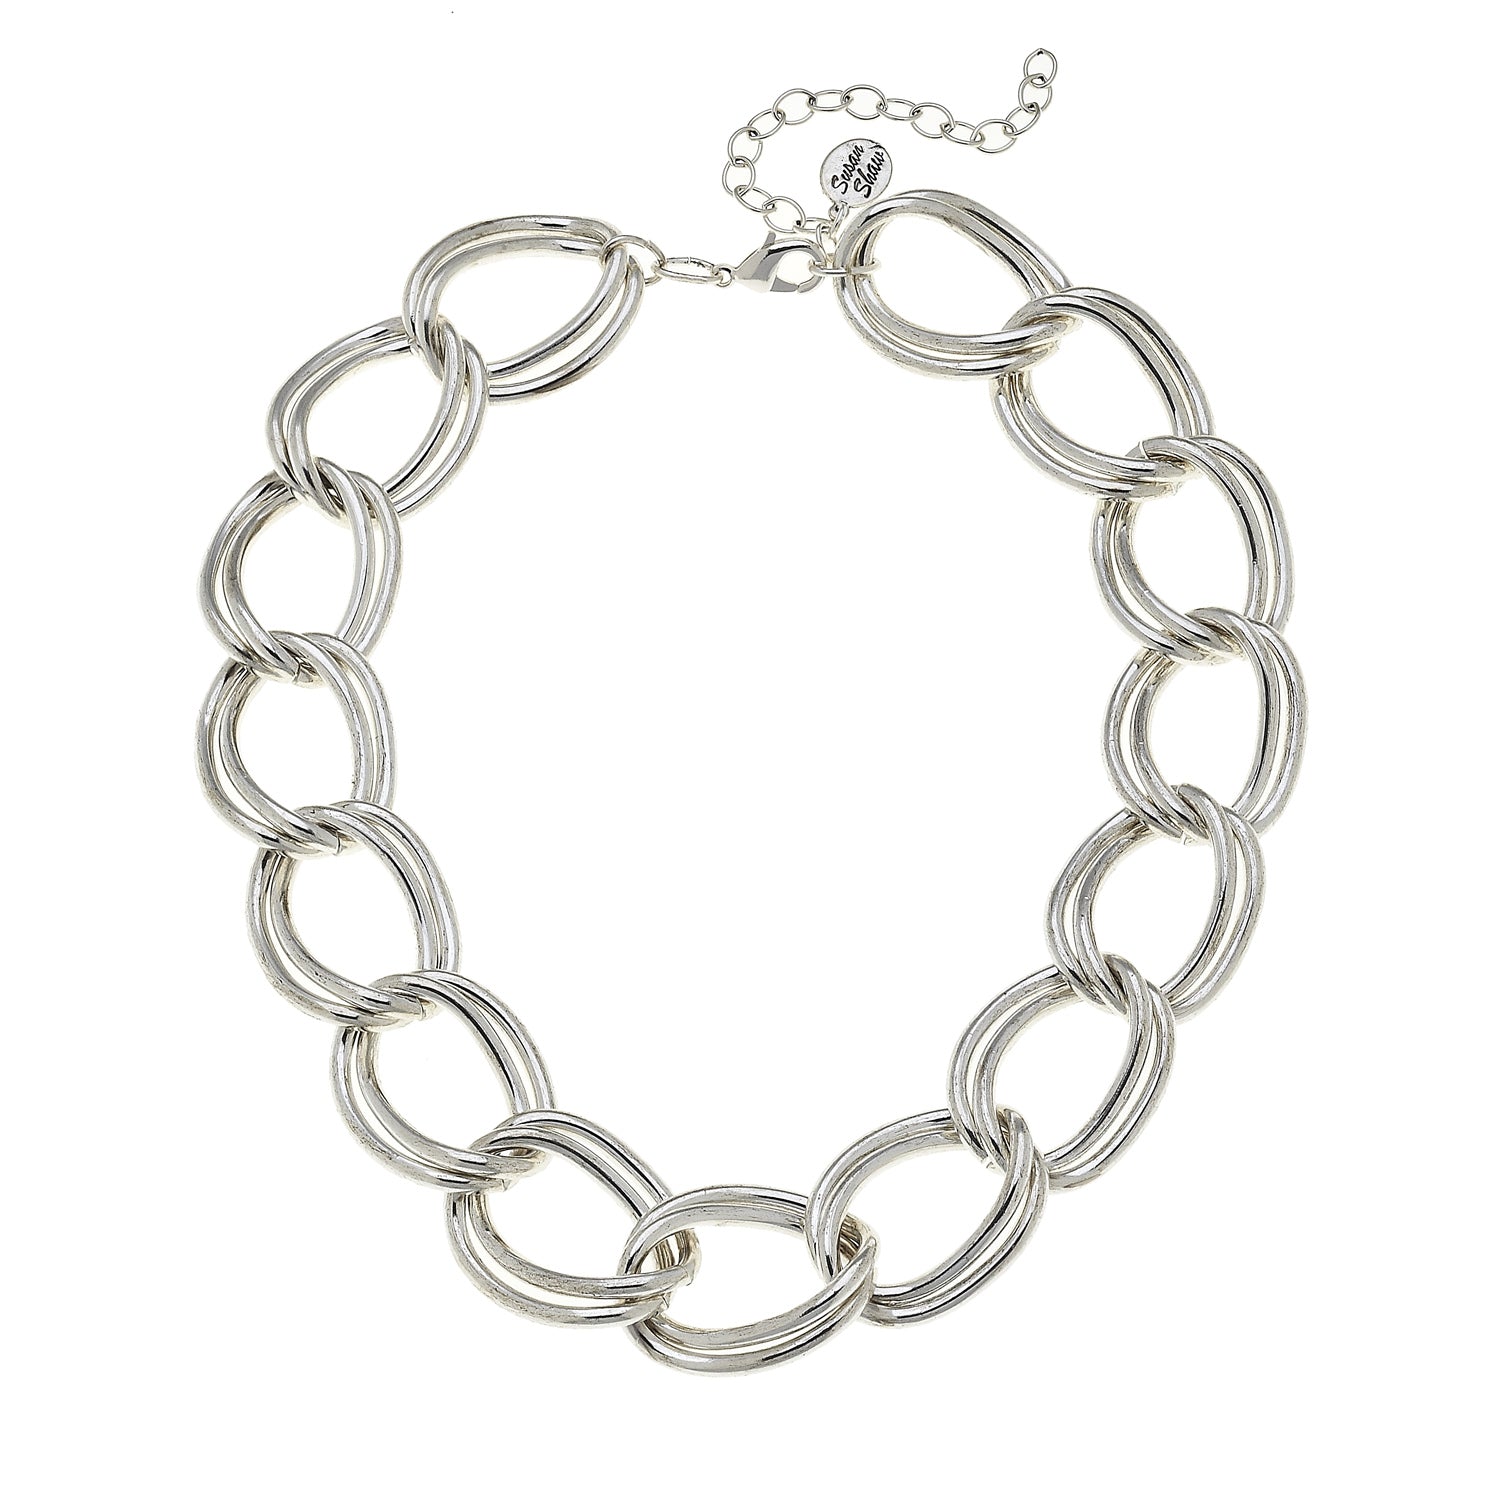 Connected Loop Bracelet